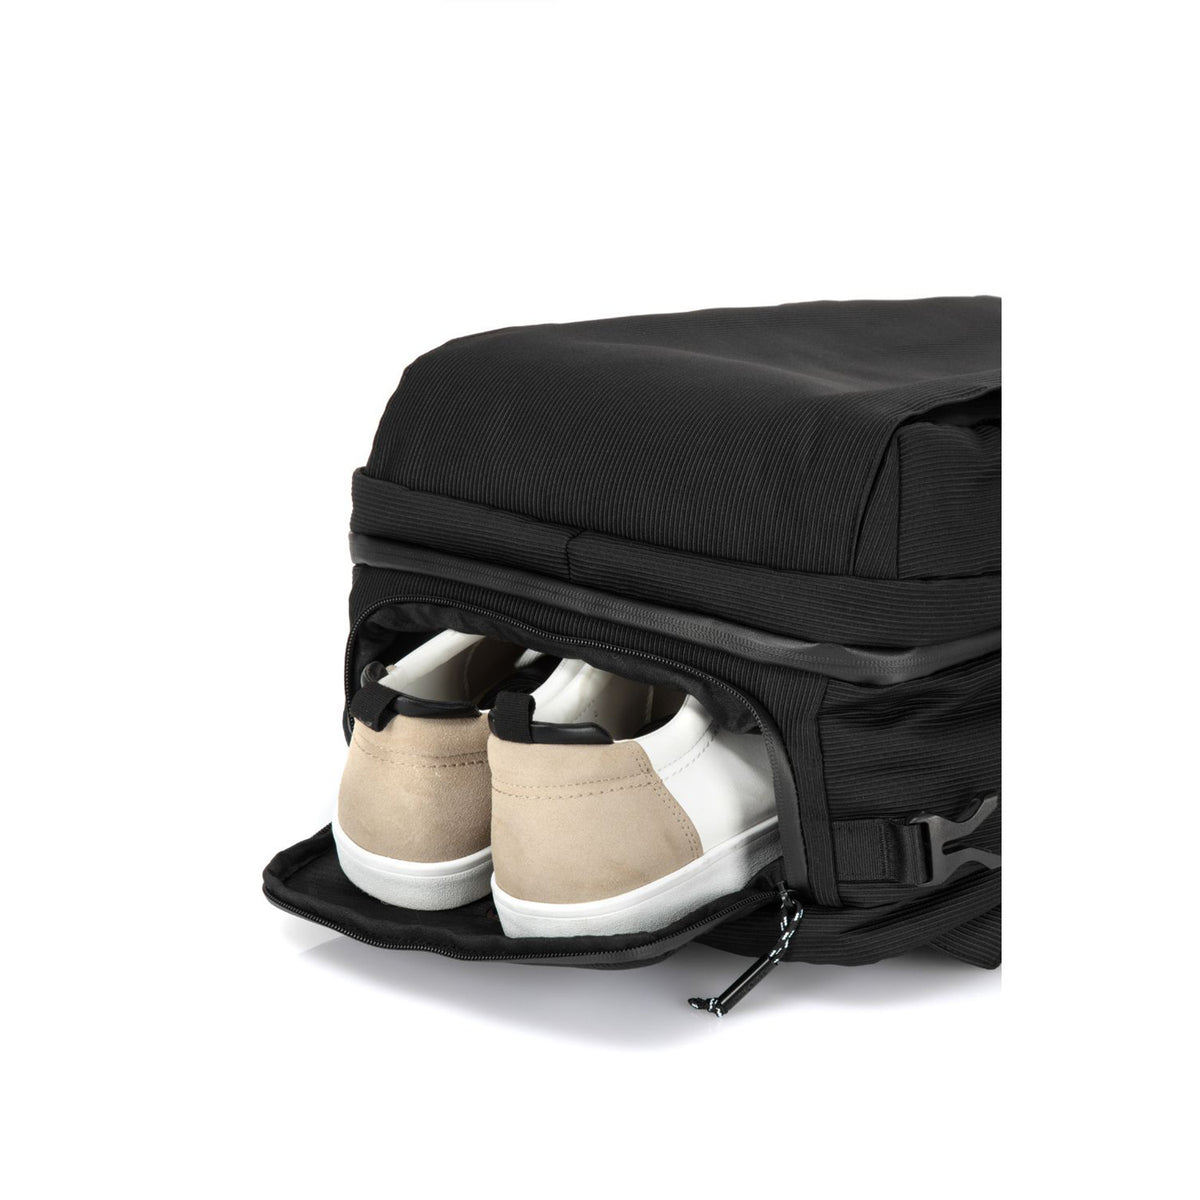 Samsonite Urban Packer Convertible Backpack M